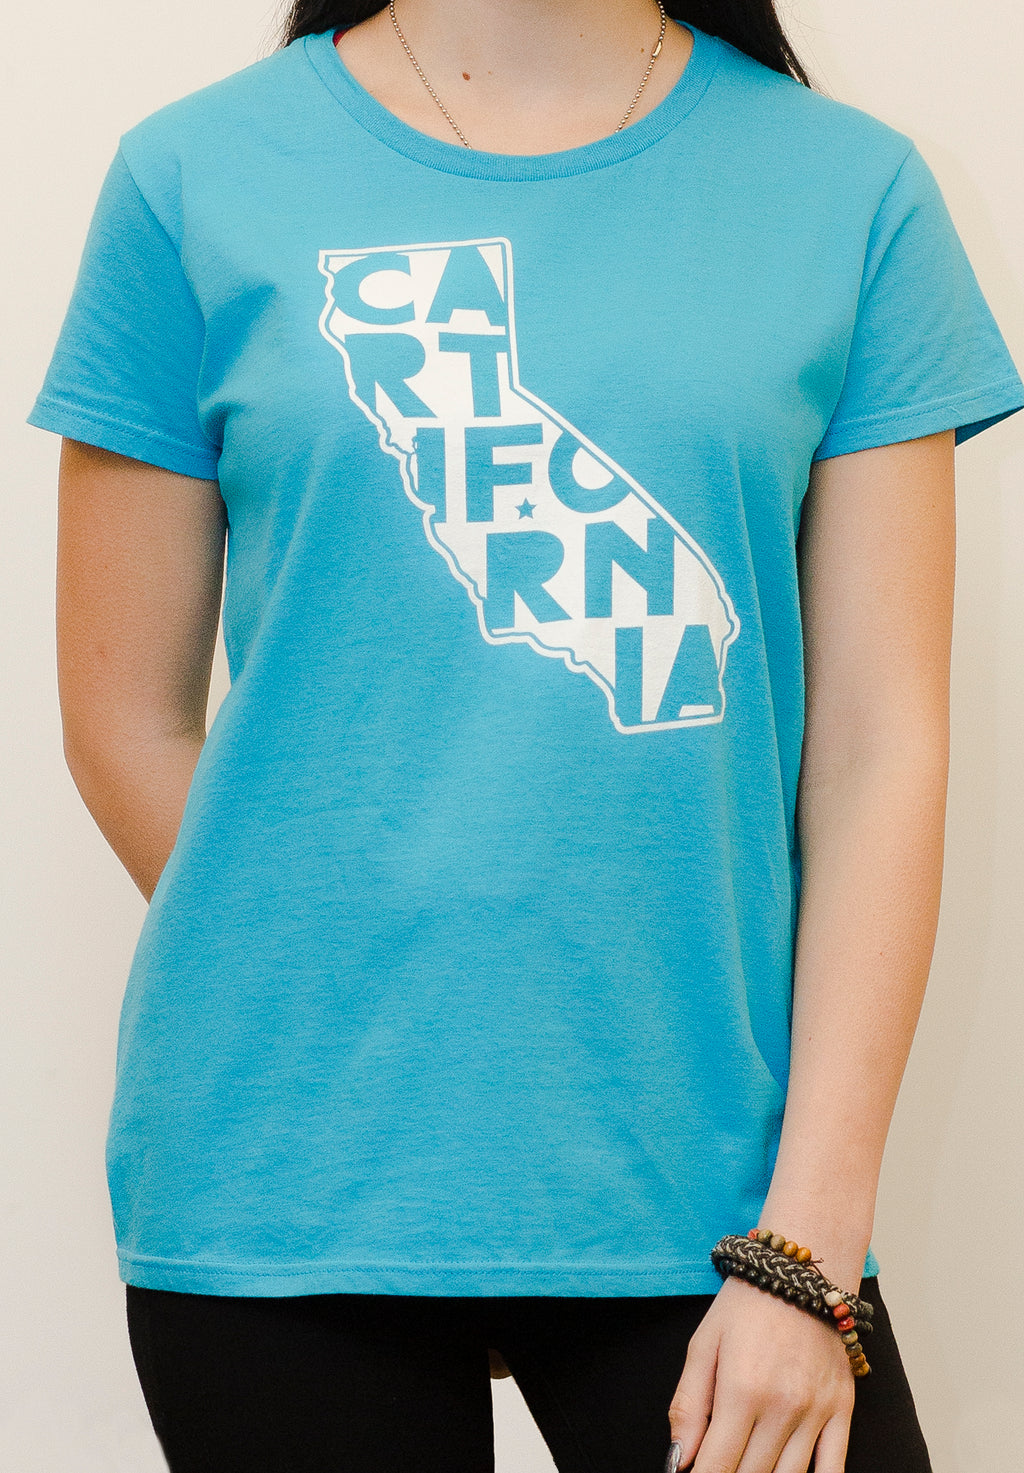 Women's CARTifornia - t-shirt